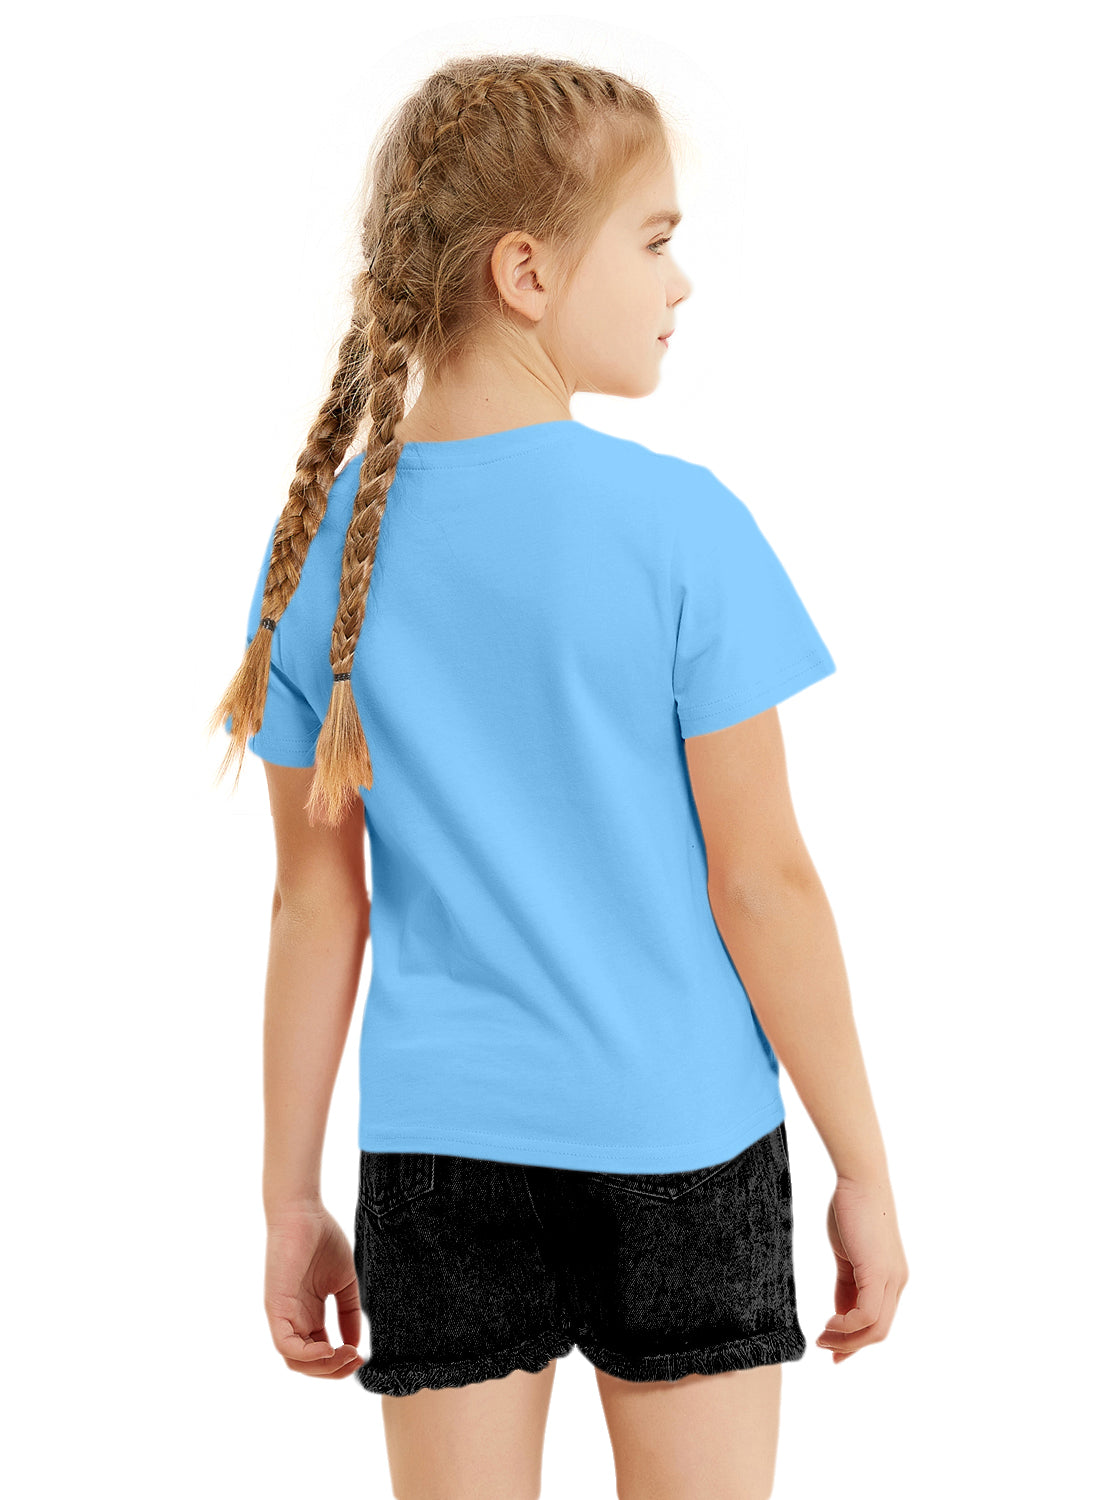 Blue Girls Sequin Cotton T-shirt